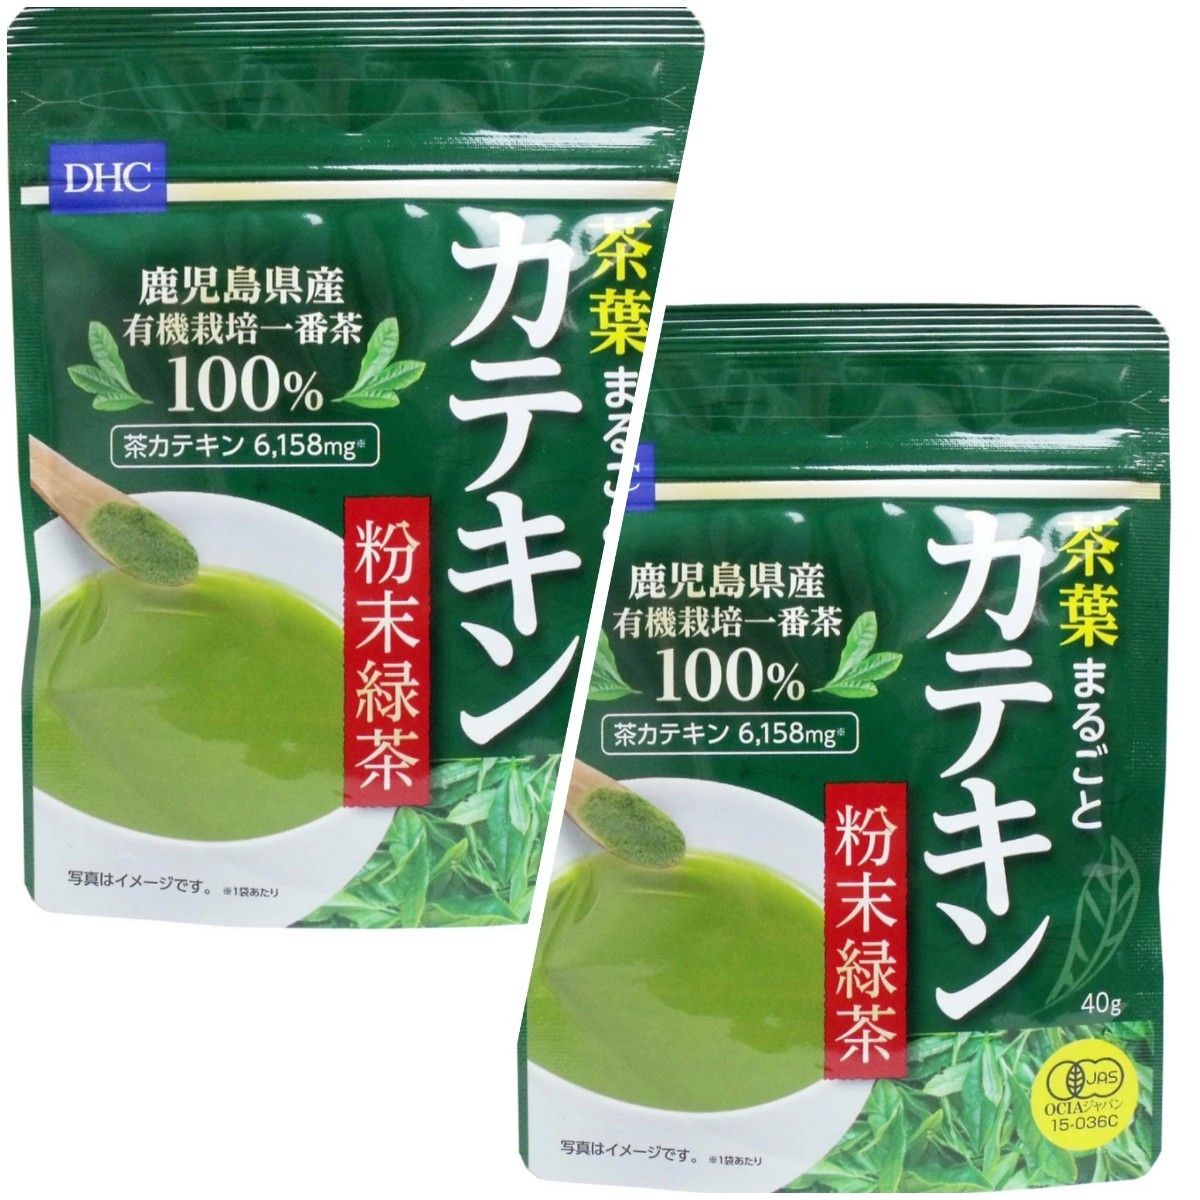 【２袋】 DHC 茶葉まるごとカテキン 粉末緑茶 国産茶葉使用 鹿児島県産 グリーンティー 無糖 健康食品 美肌 ダイエット